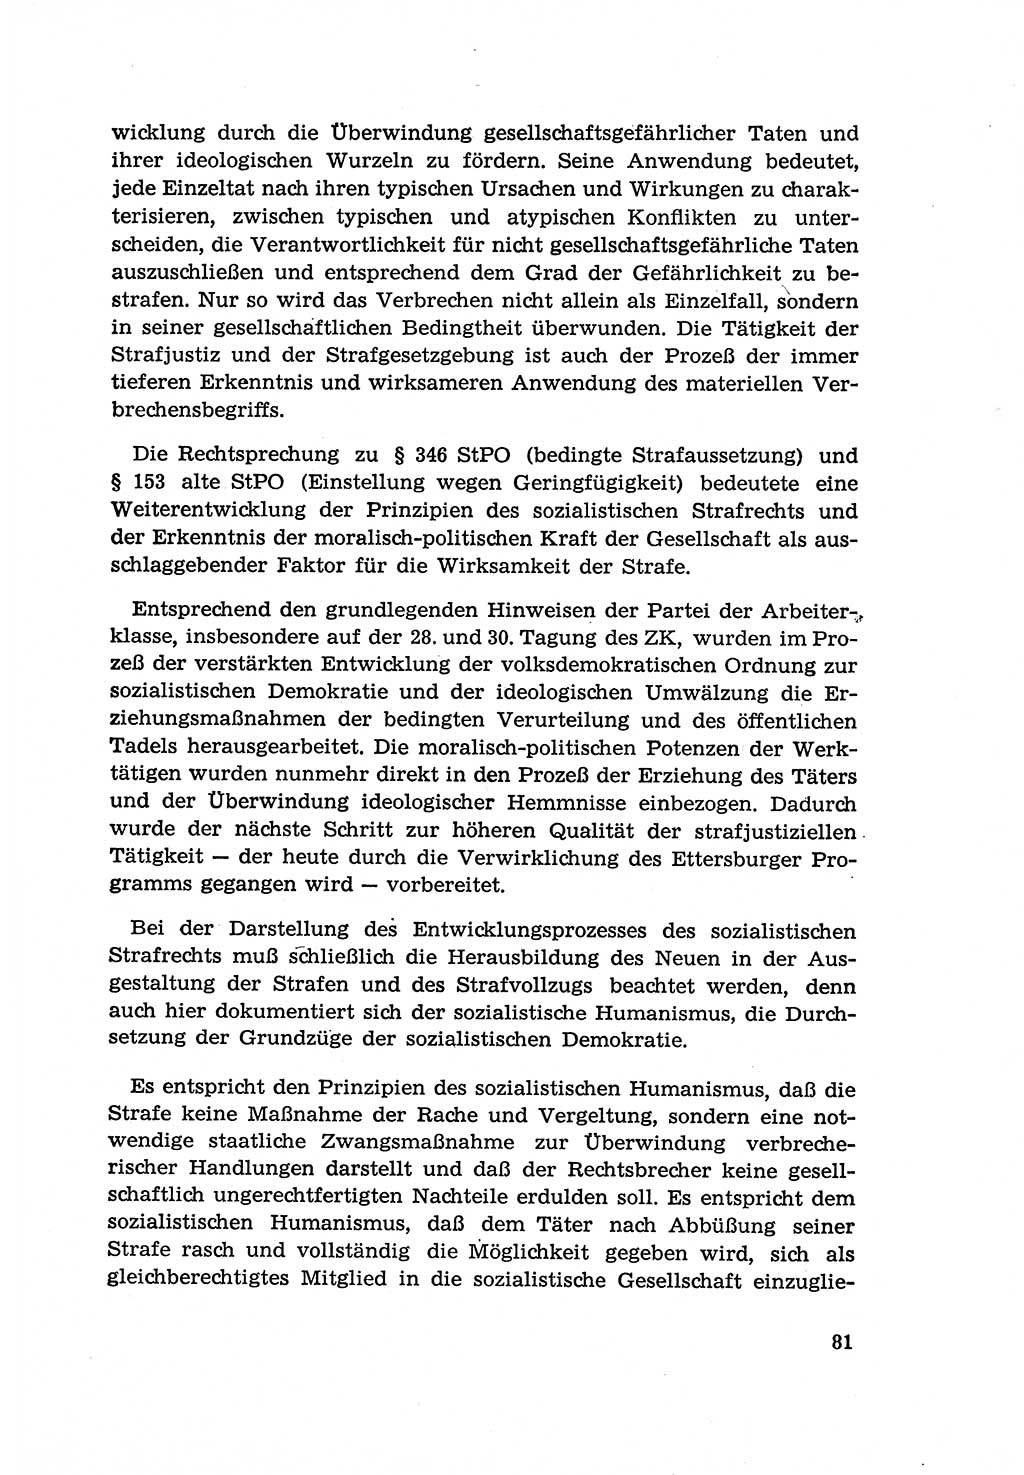 Zur Entwicklung des sozialistischen Strafrechts der Deutschen Demokratischen Republik (DDR) 1960, Seite 81 (Entw. soz. Strafr. DDR 1960, S. 81)